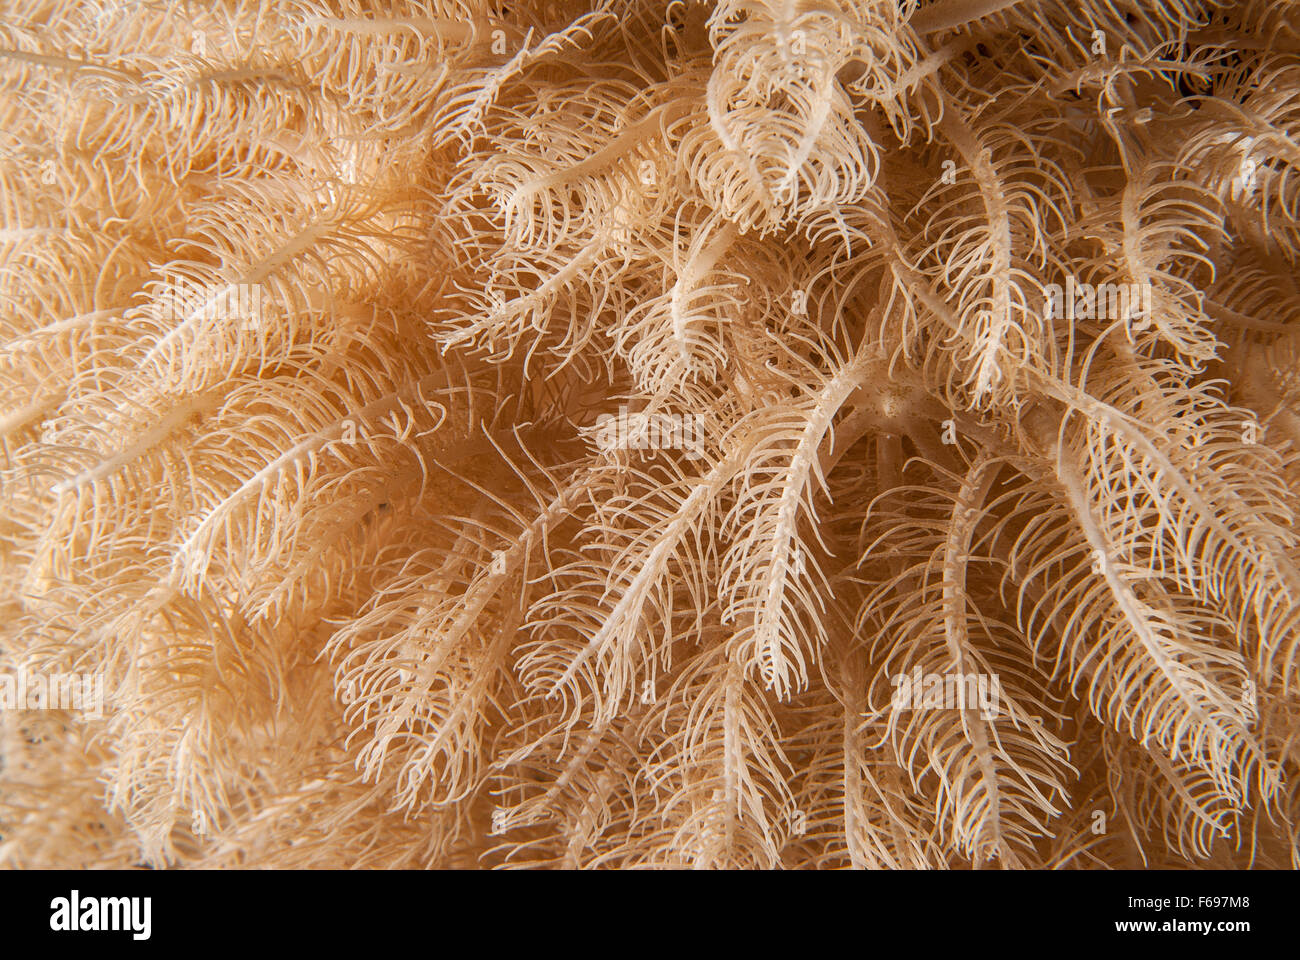 Anthelia sp.,,(Xeriidae Octocorallia, Alcyonacea), coral blando, Sharm el- Sheikh, Mar Rojo, Egipto Foto de stock